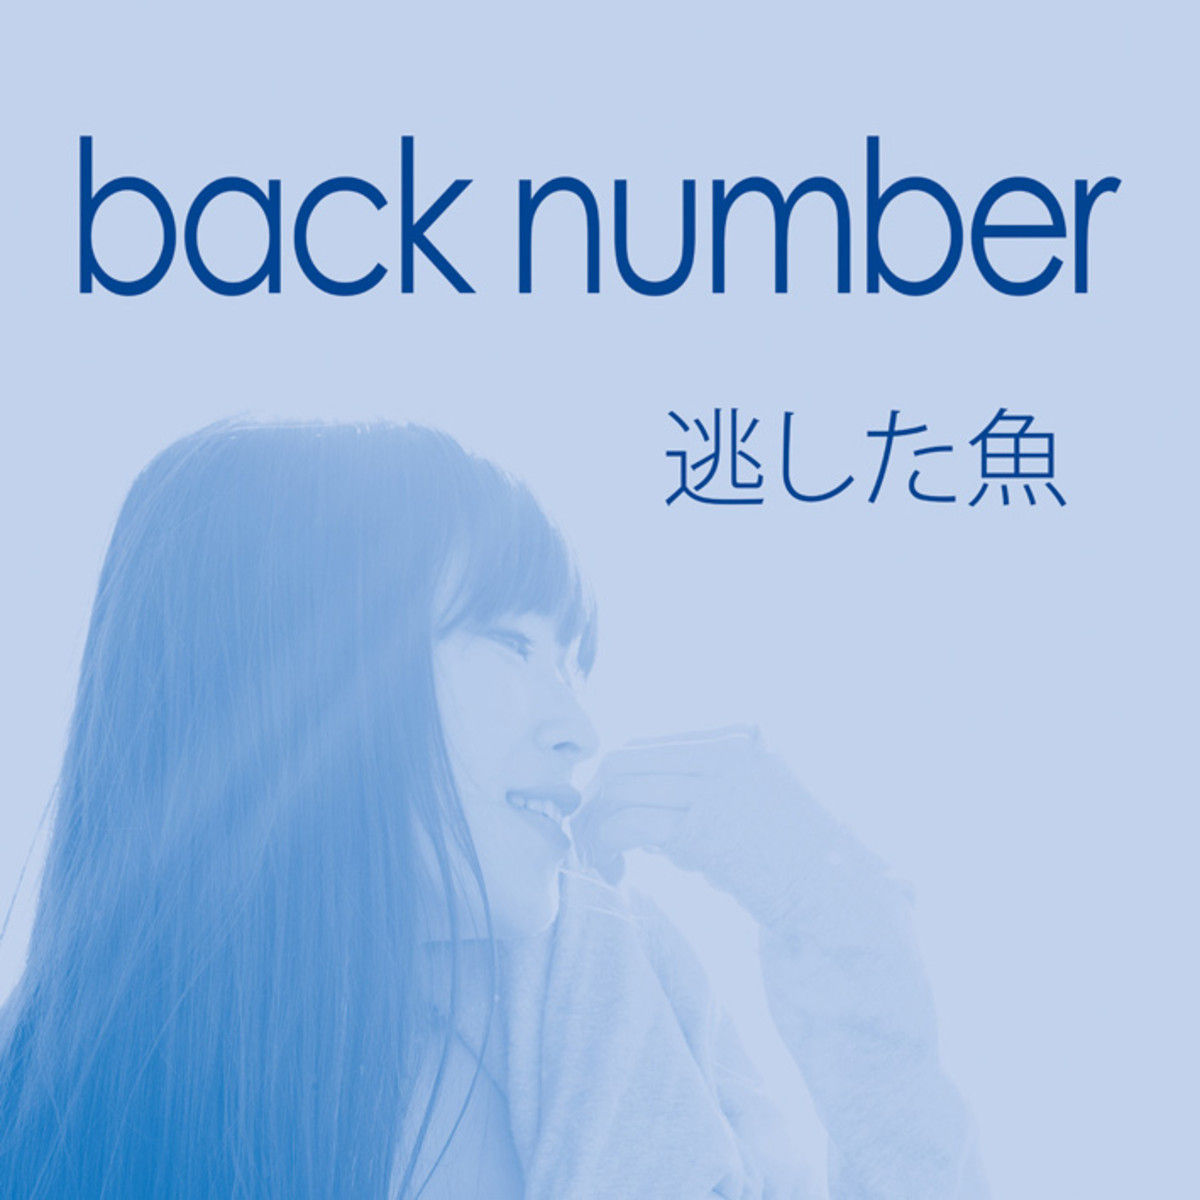 名曲 Back Numberのおすすめアルバム リューブログ